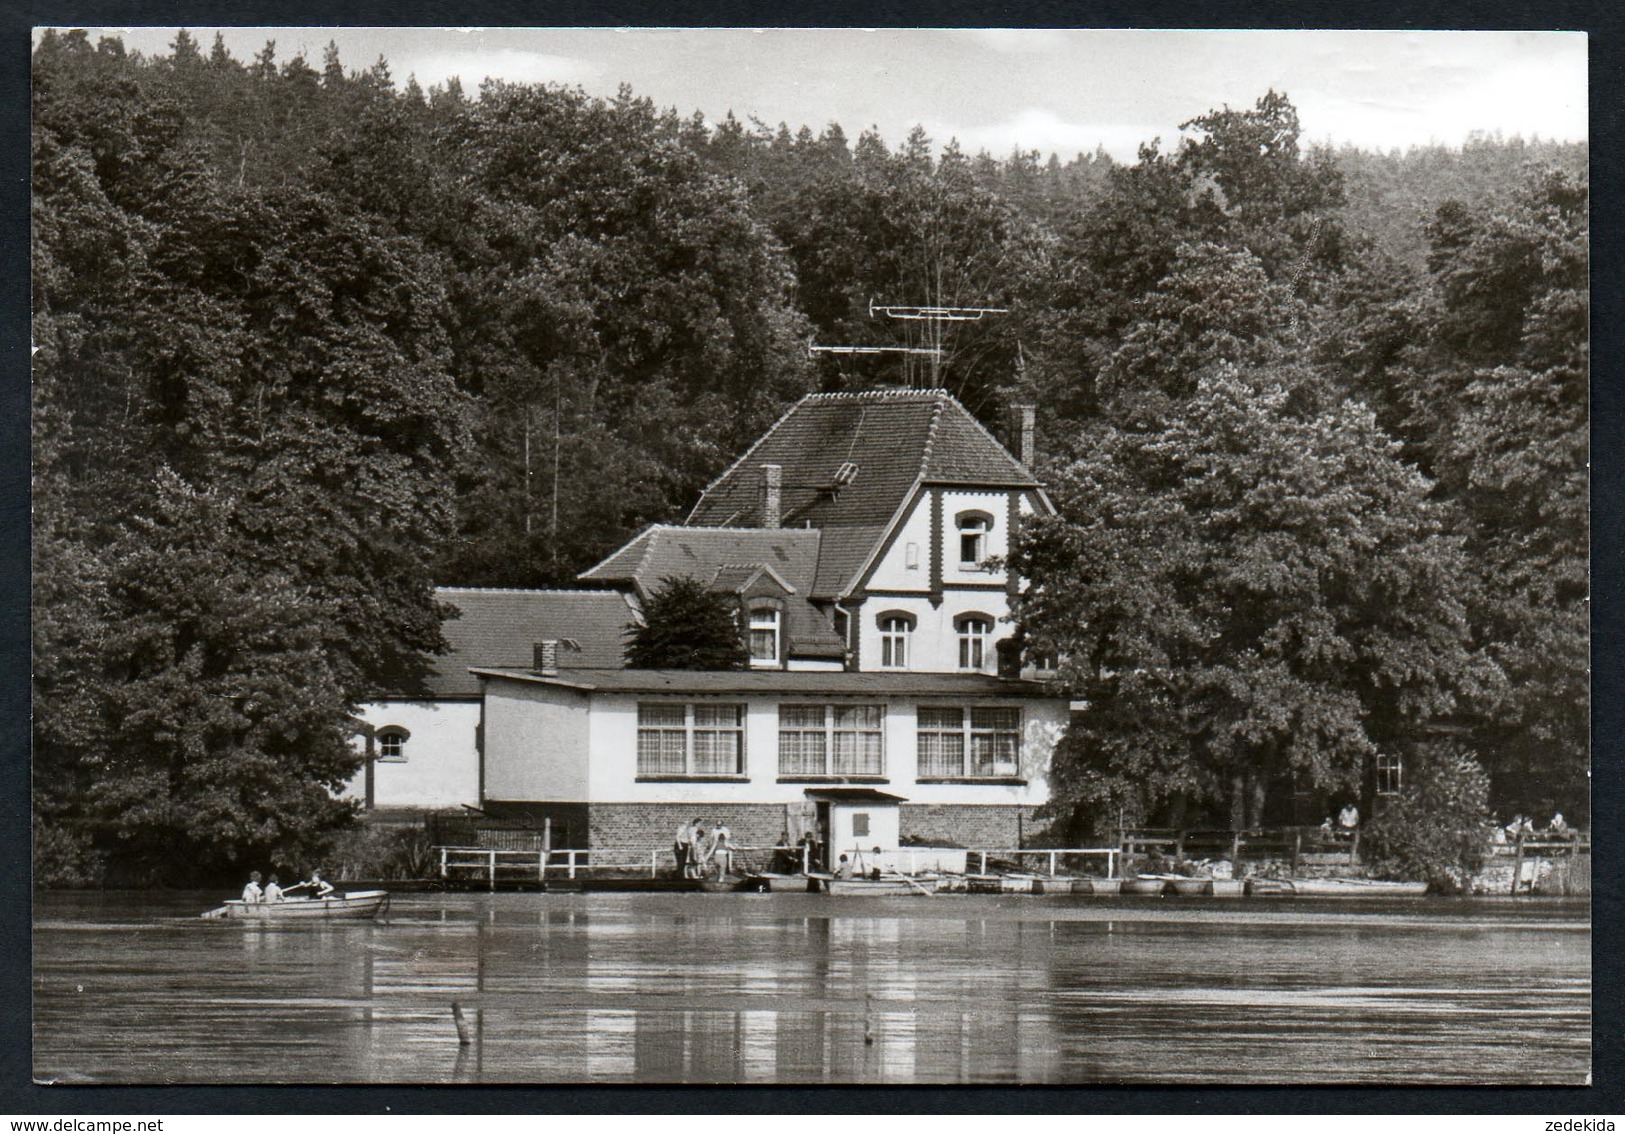 A1476 - Alte Foto Ansichtskarte - Hainspitz Konsum Gaststätte Am See - N. Gel - Schincke - Eisenberg